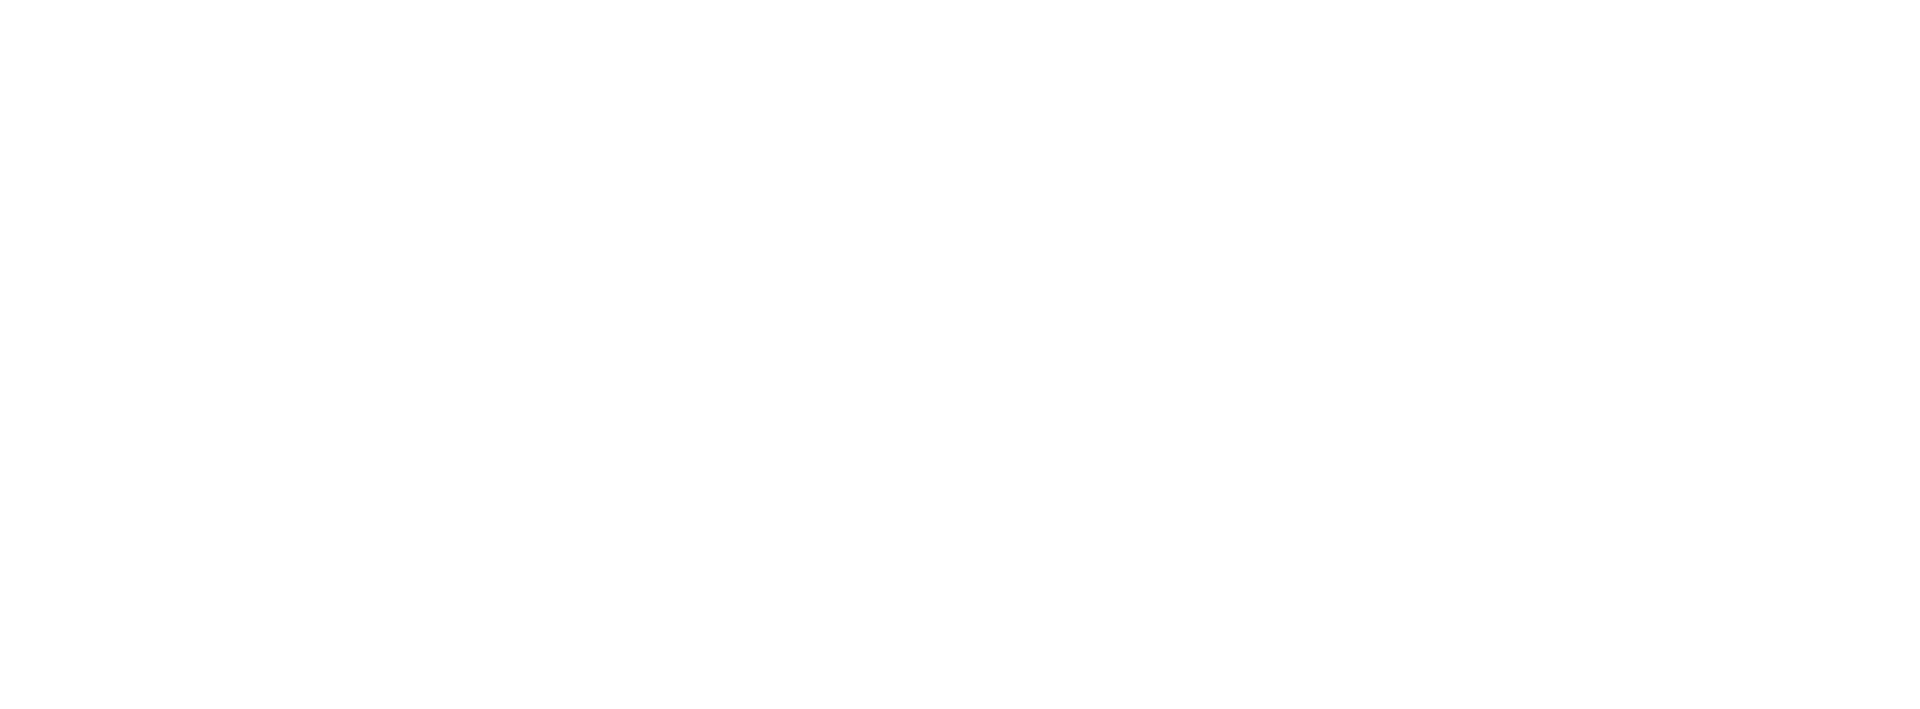 Marky Swim - Logo